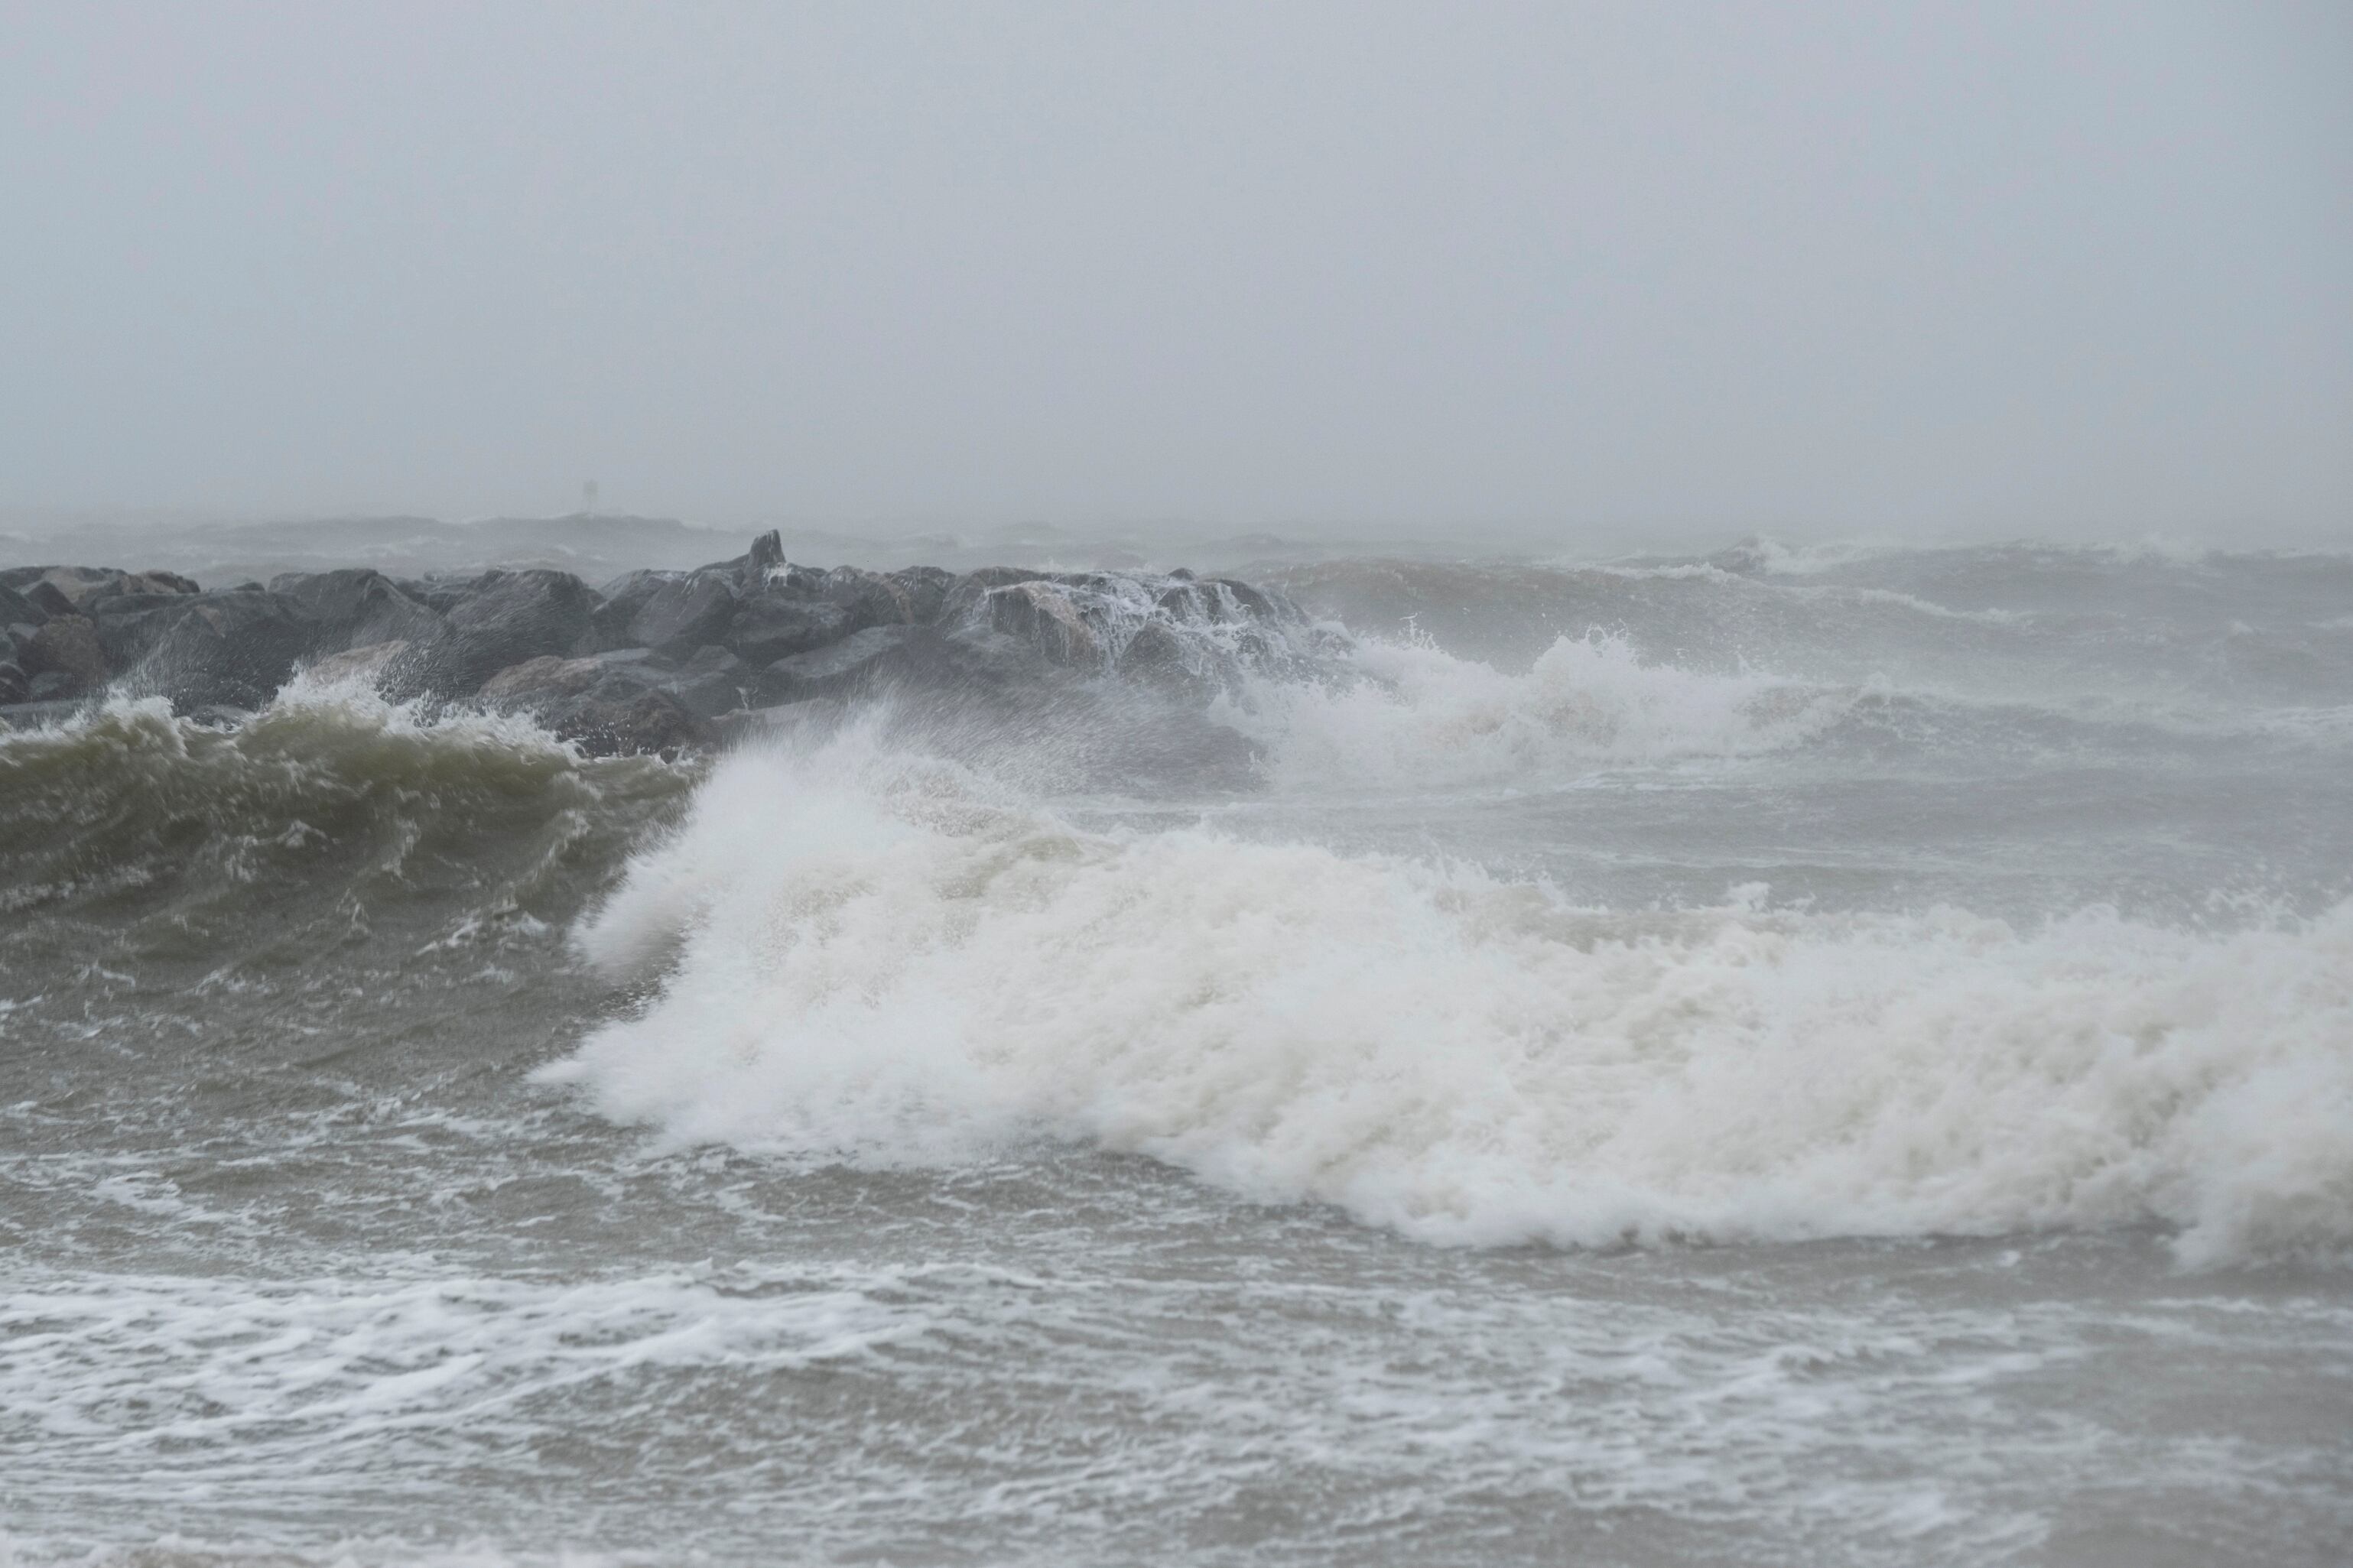 Los fenómenos naturales como tsunamis y marejadas ciclónicas son cada vez más frecuentes en el mundo (Billy Schuerman/The Virginian-Pilot vía AP, archivo)